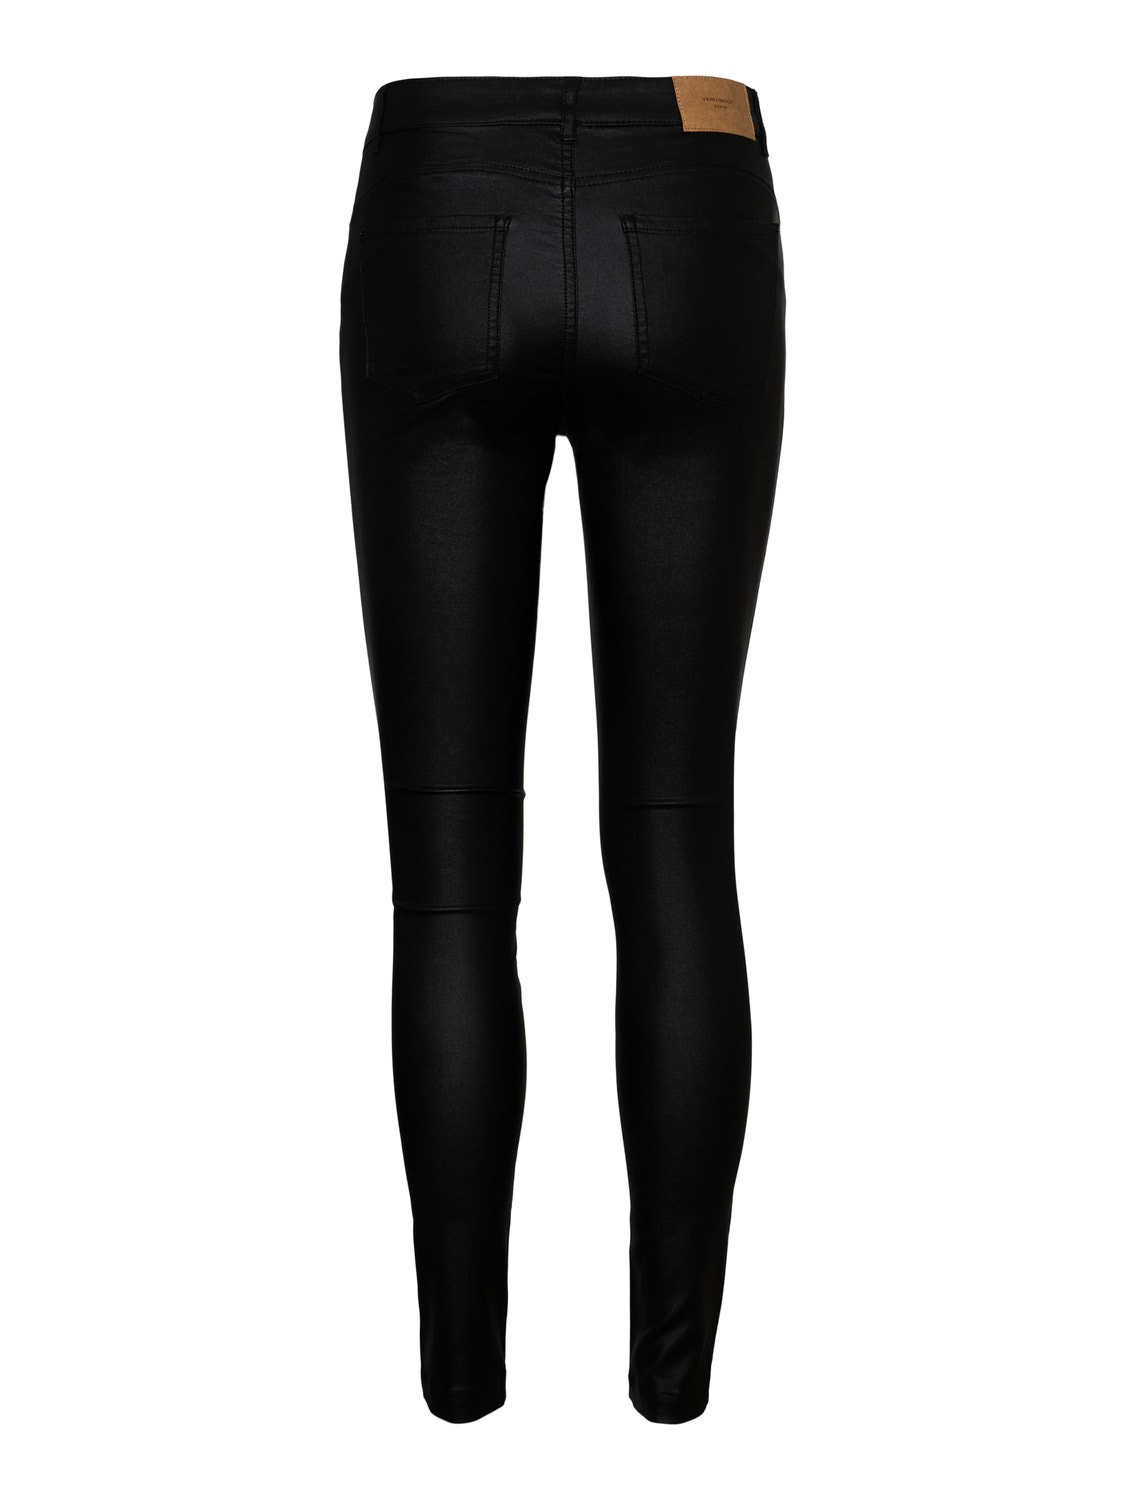 Vero Moda VMALIA Trousers -Black - 10291078